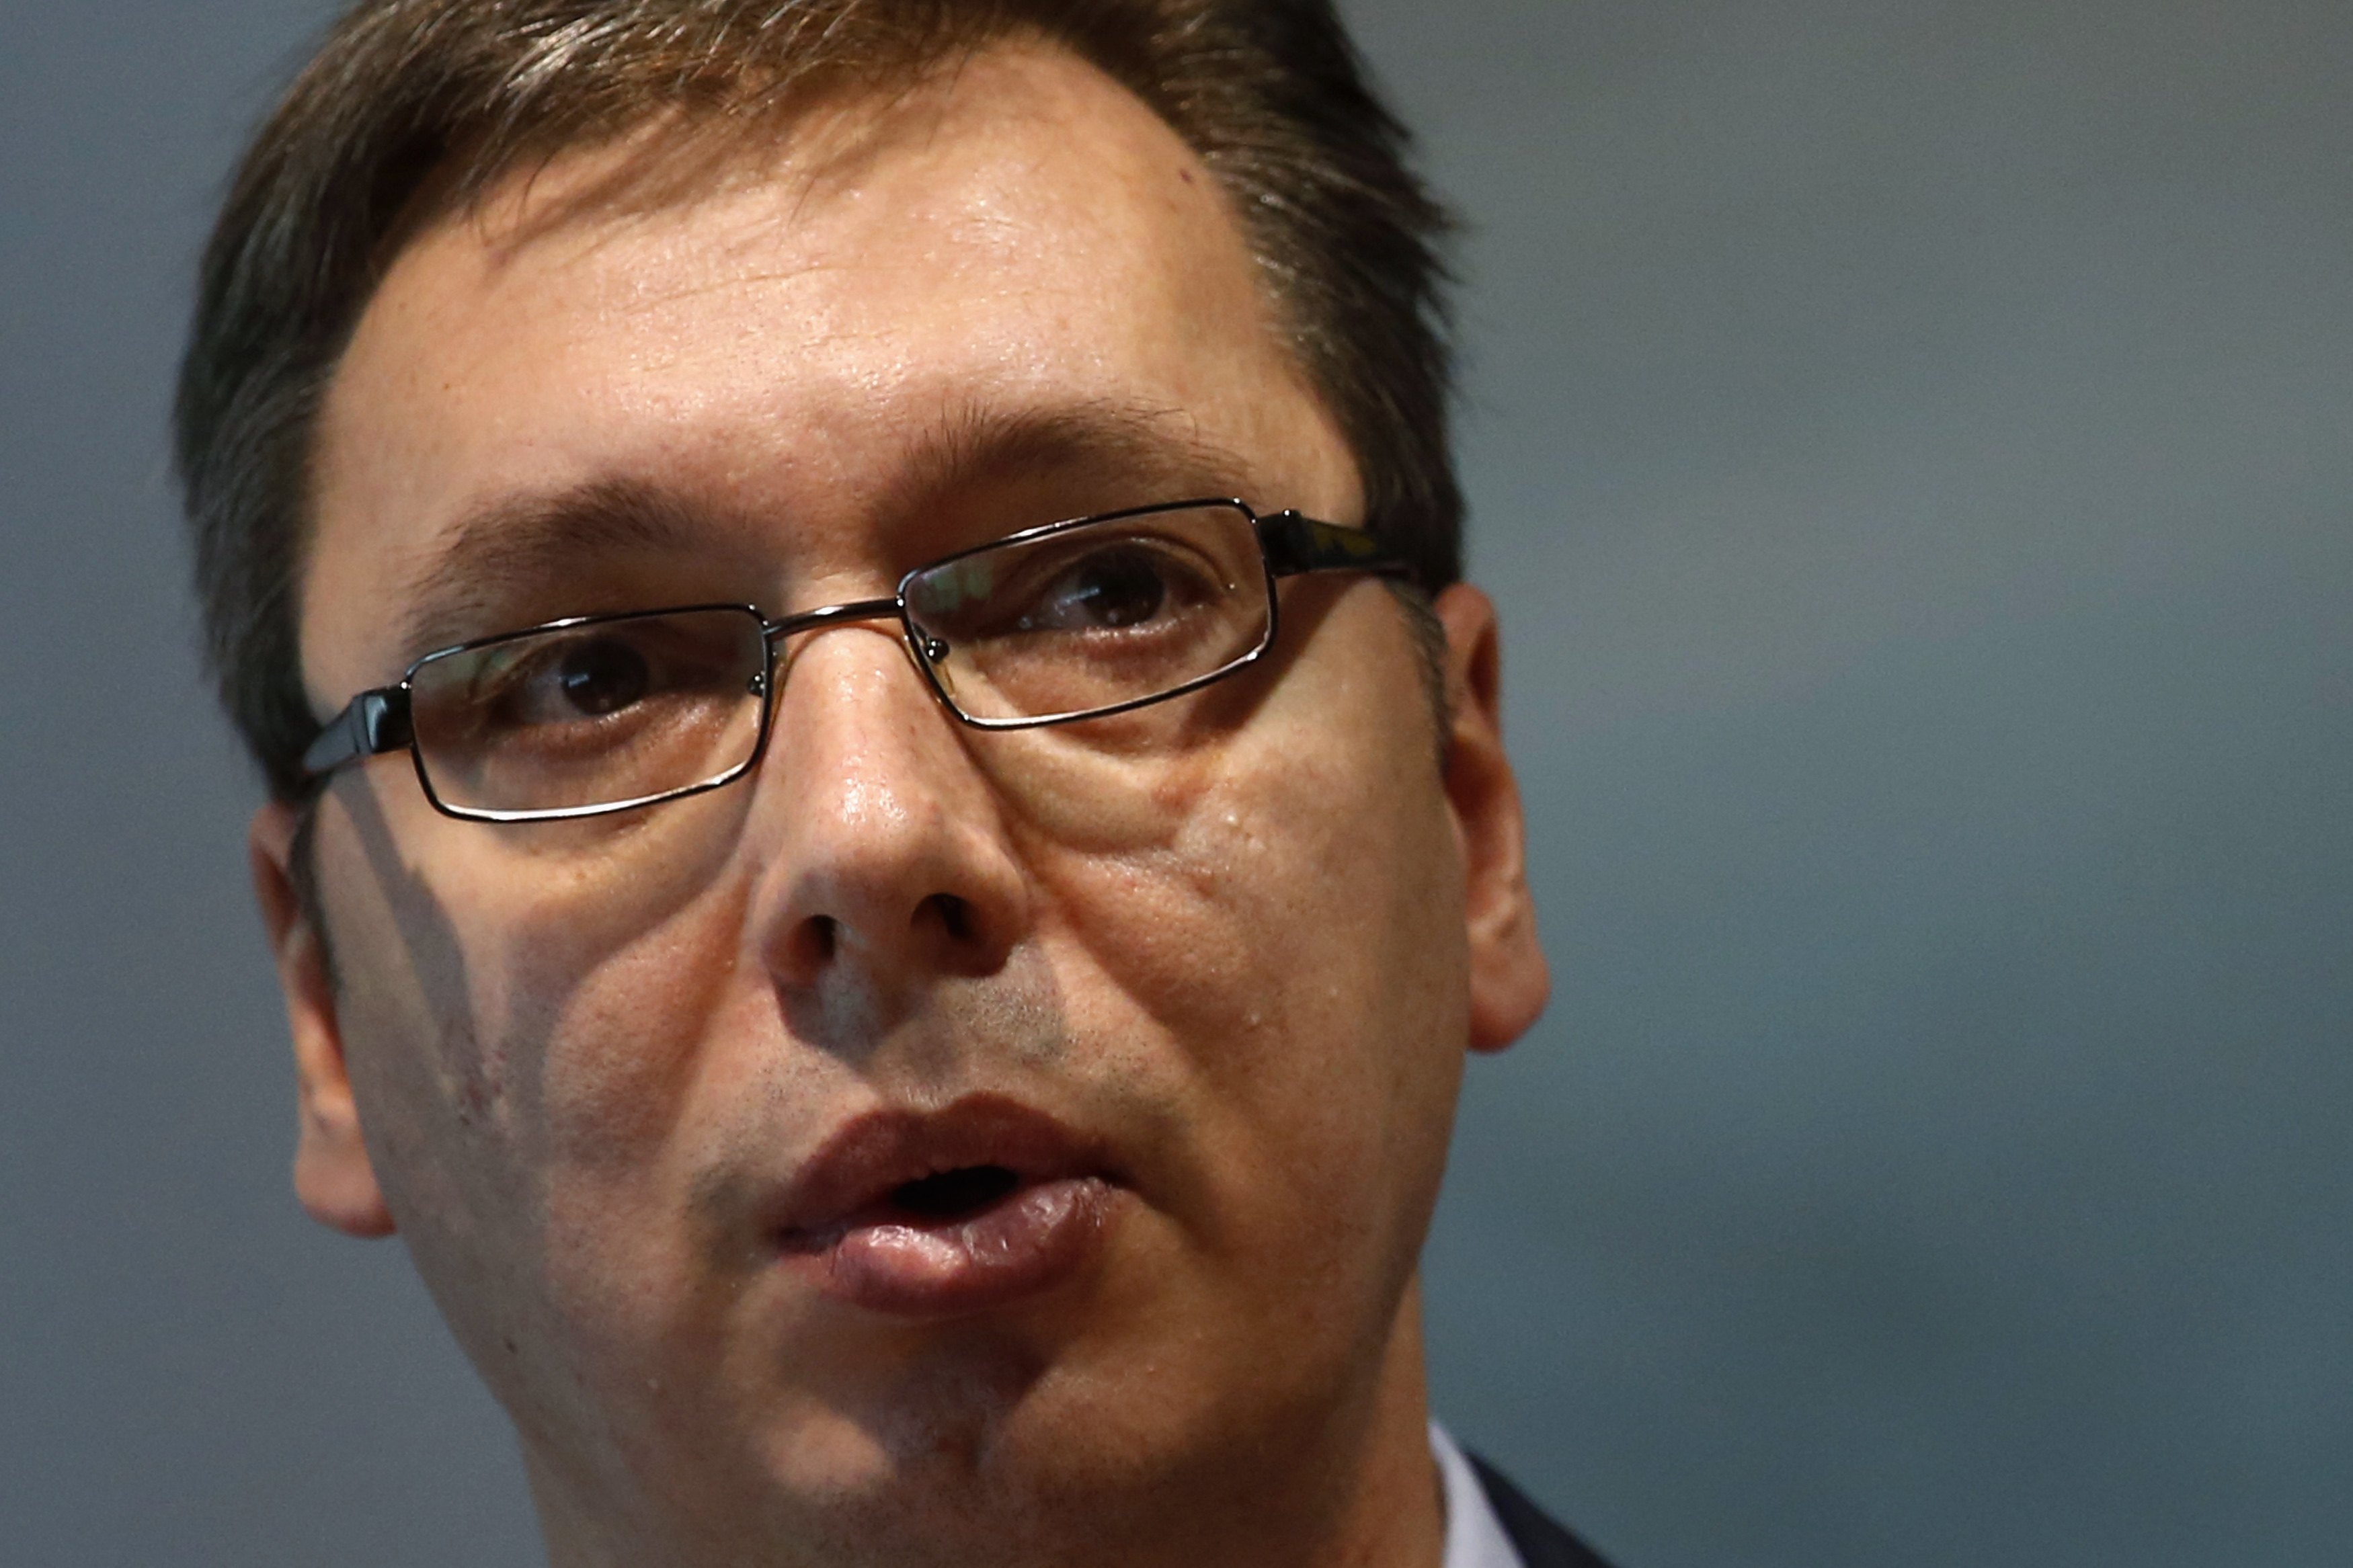 “Η Σερβία επιθυμεί να γίνει σύμμαχος της Γερμανίας”, δηλώνει ο πρωθυπουργός Αλεξάνταρ Βούτσιτς